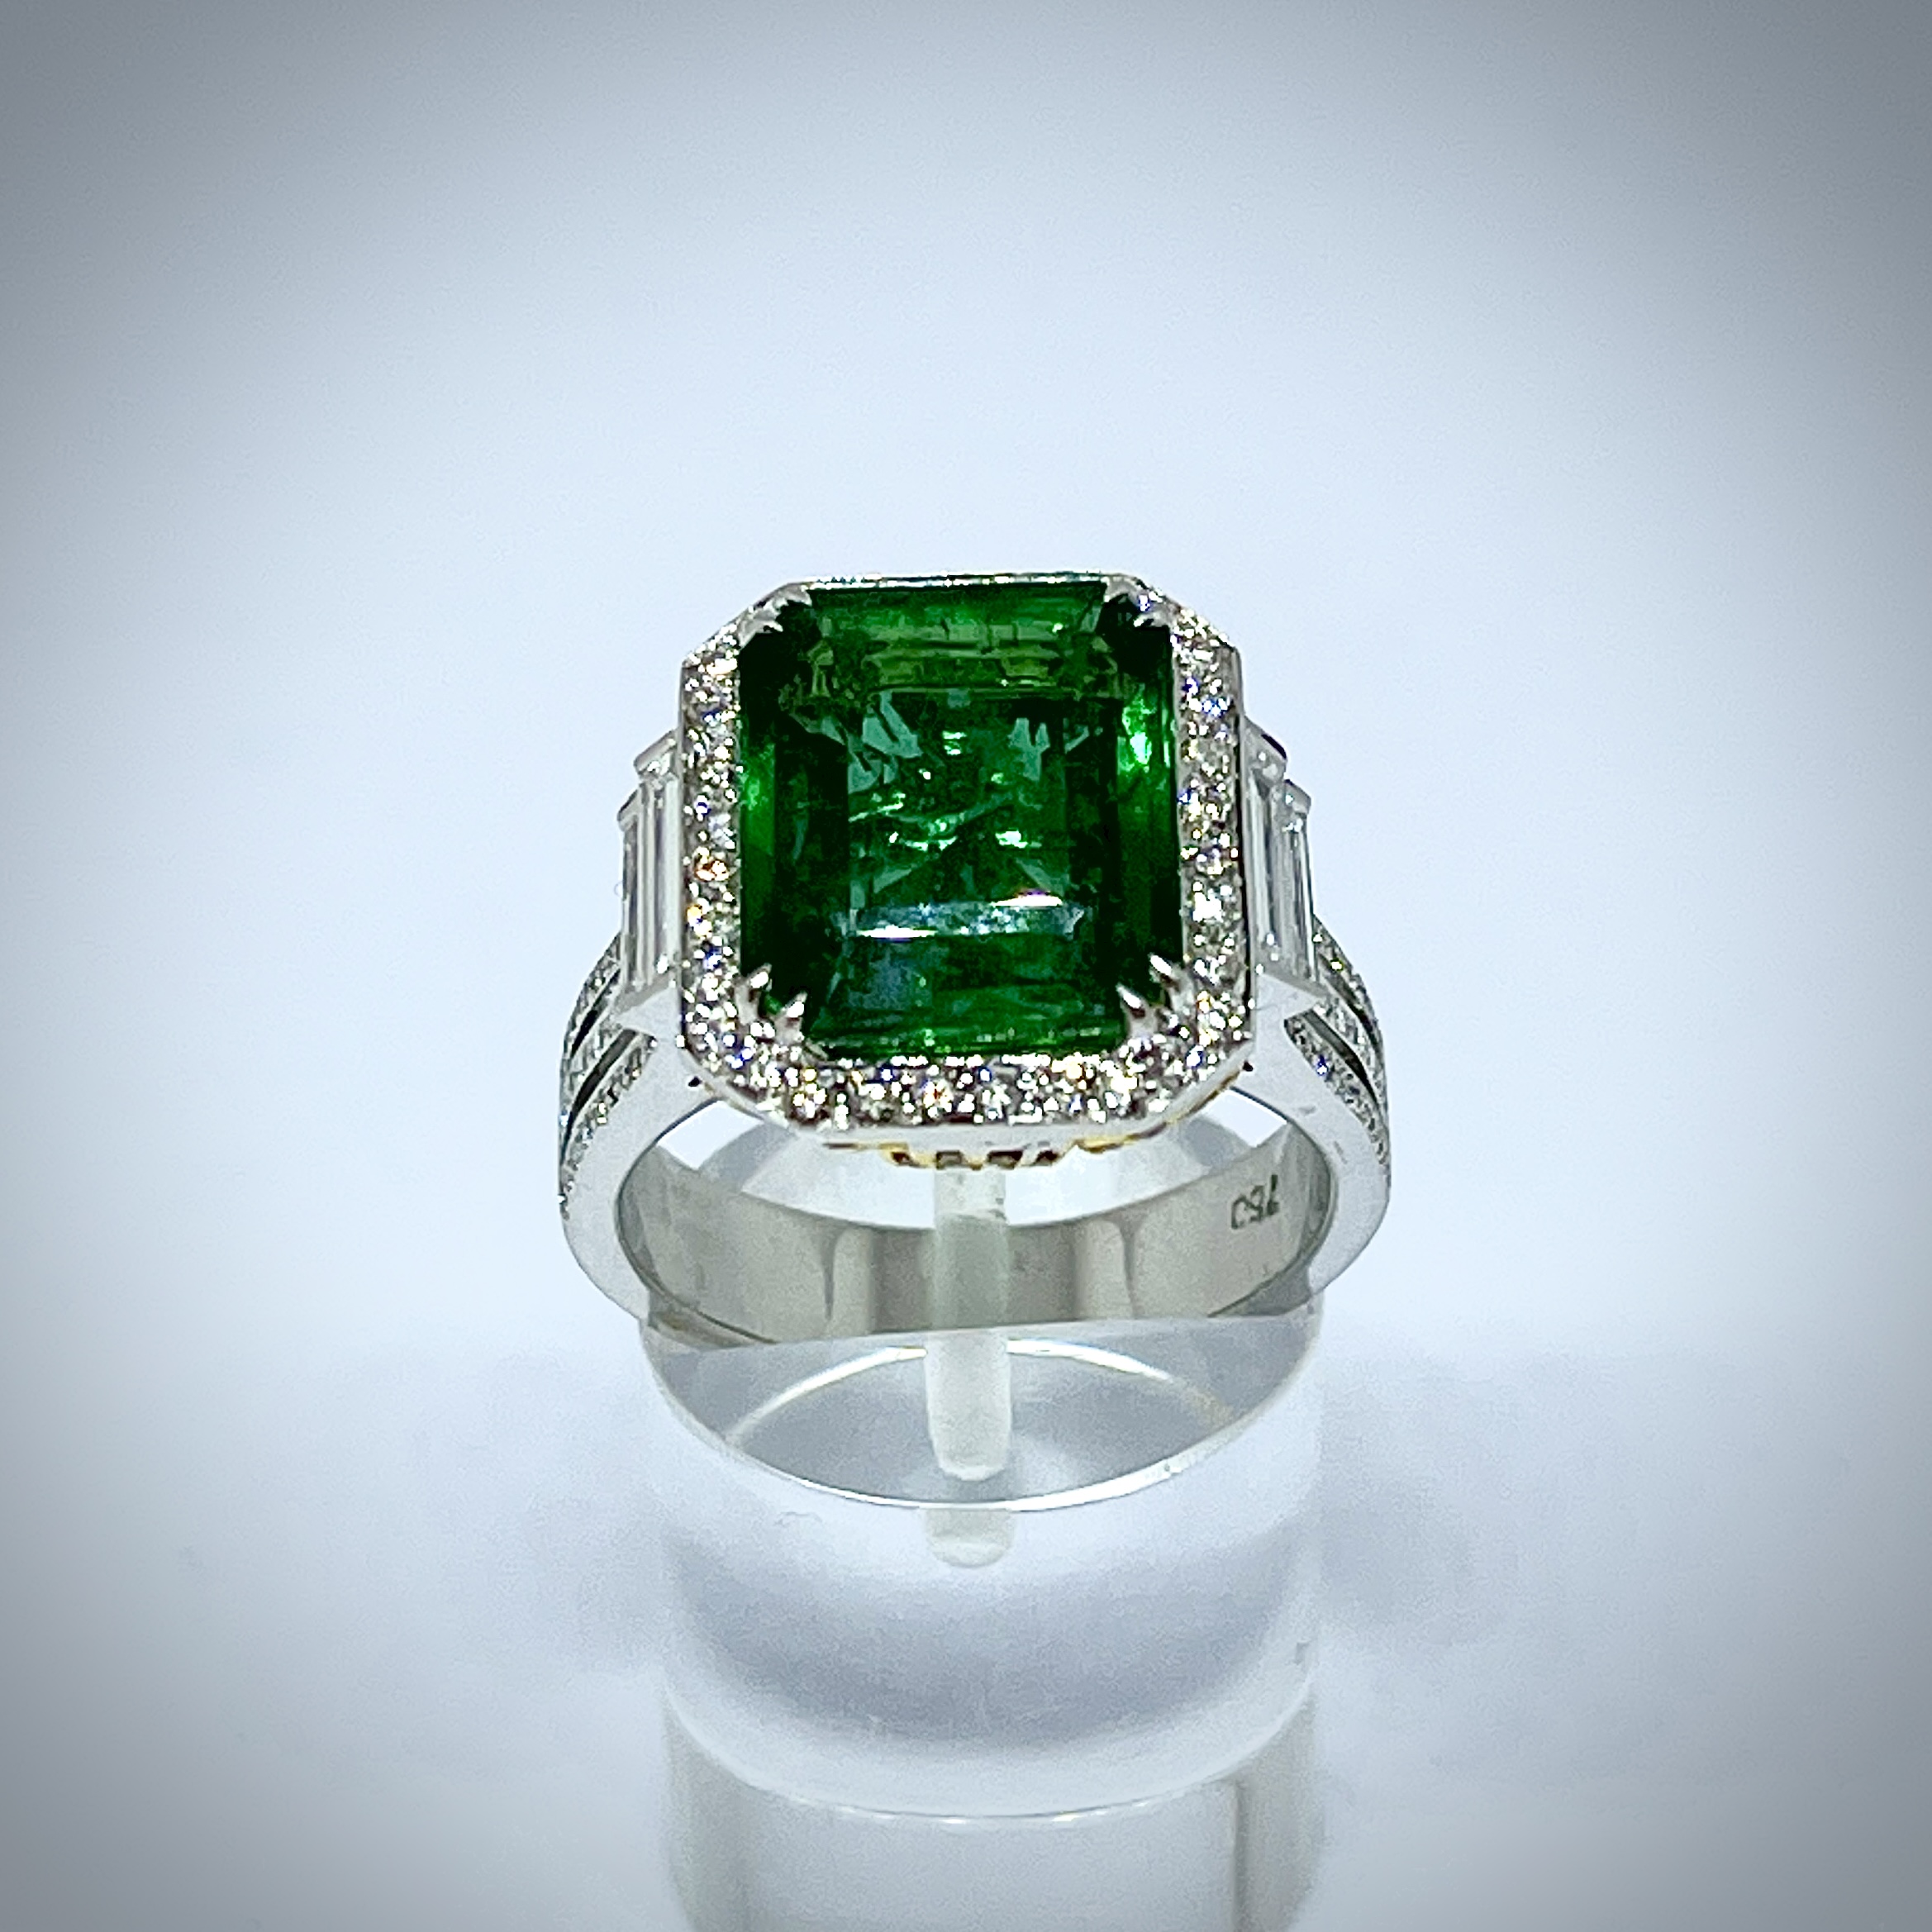 Turquoise silver ring, round turquoise ring, big stone ring, magic ring,  bali - Shop Aruna General Rings - Pinkoi